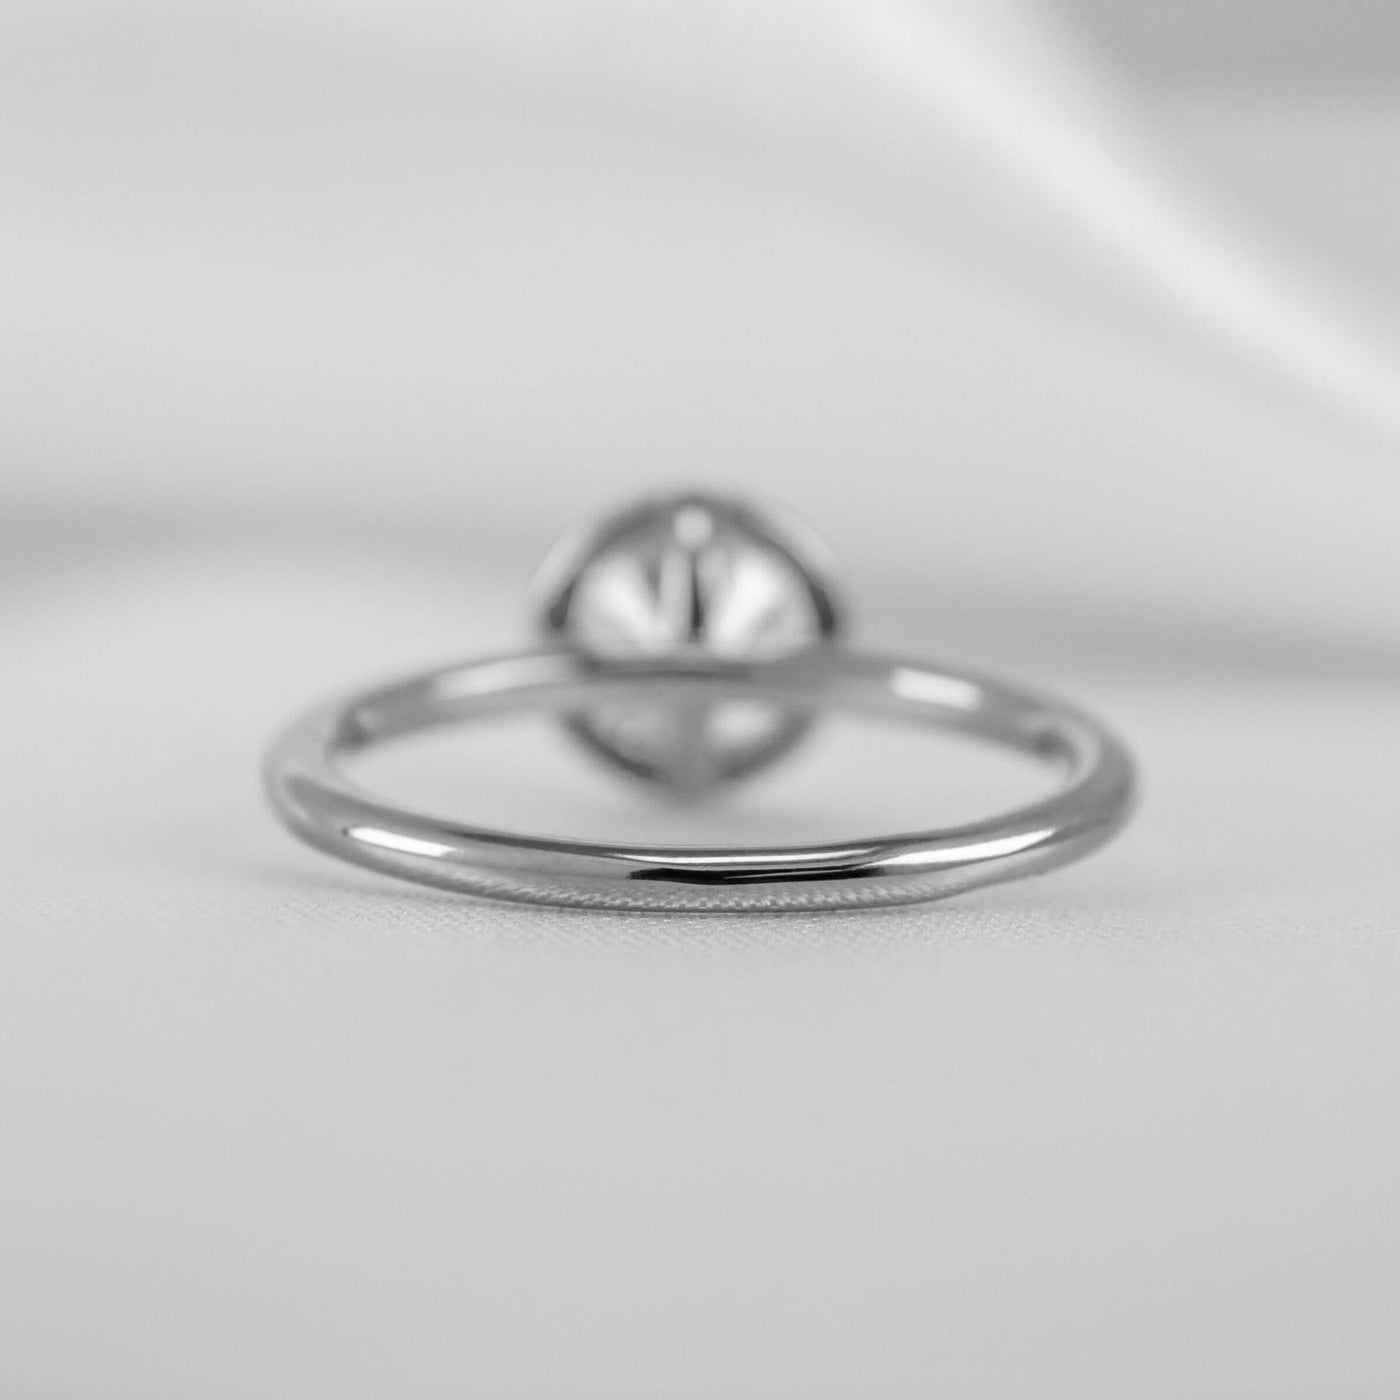 Shown in 1.0 Carat * The Nova Bezel Diamond Engagement Ring | Lisa Robin#color_18k-white-gold